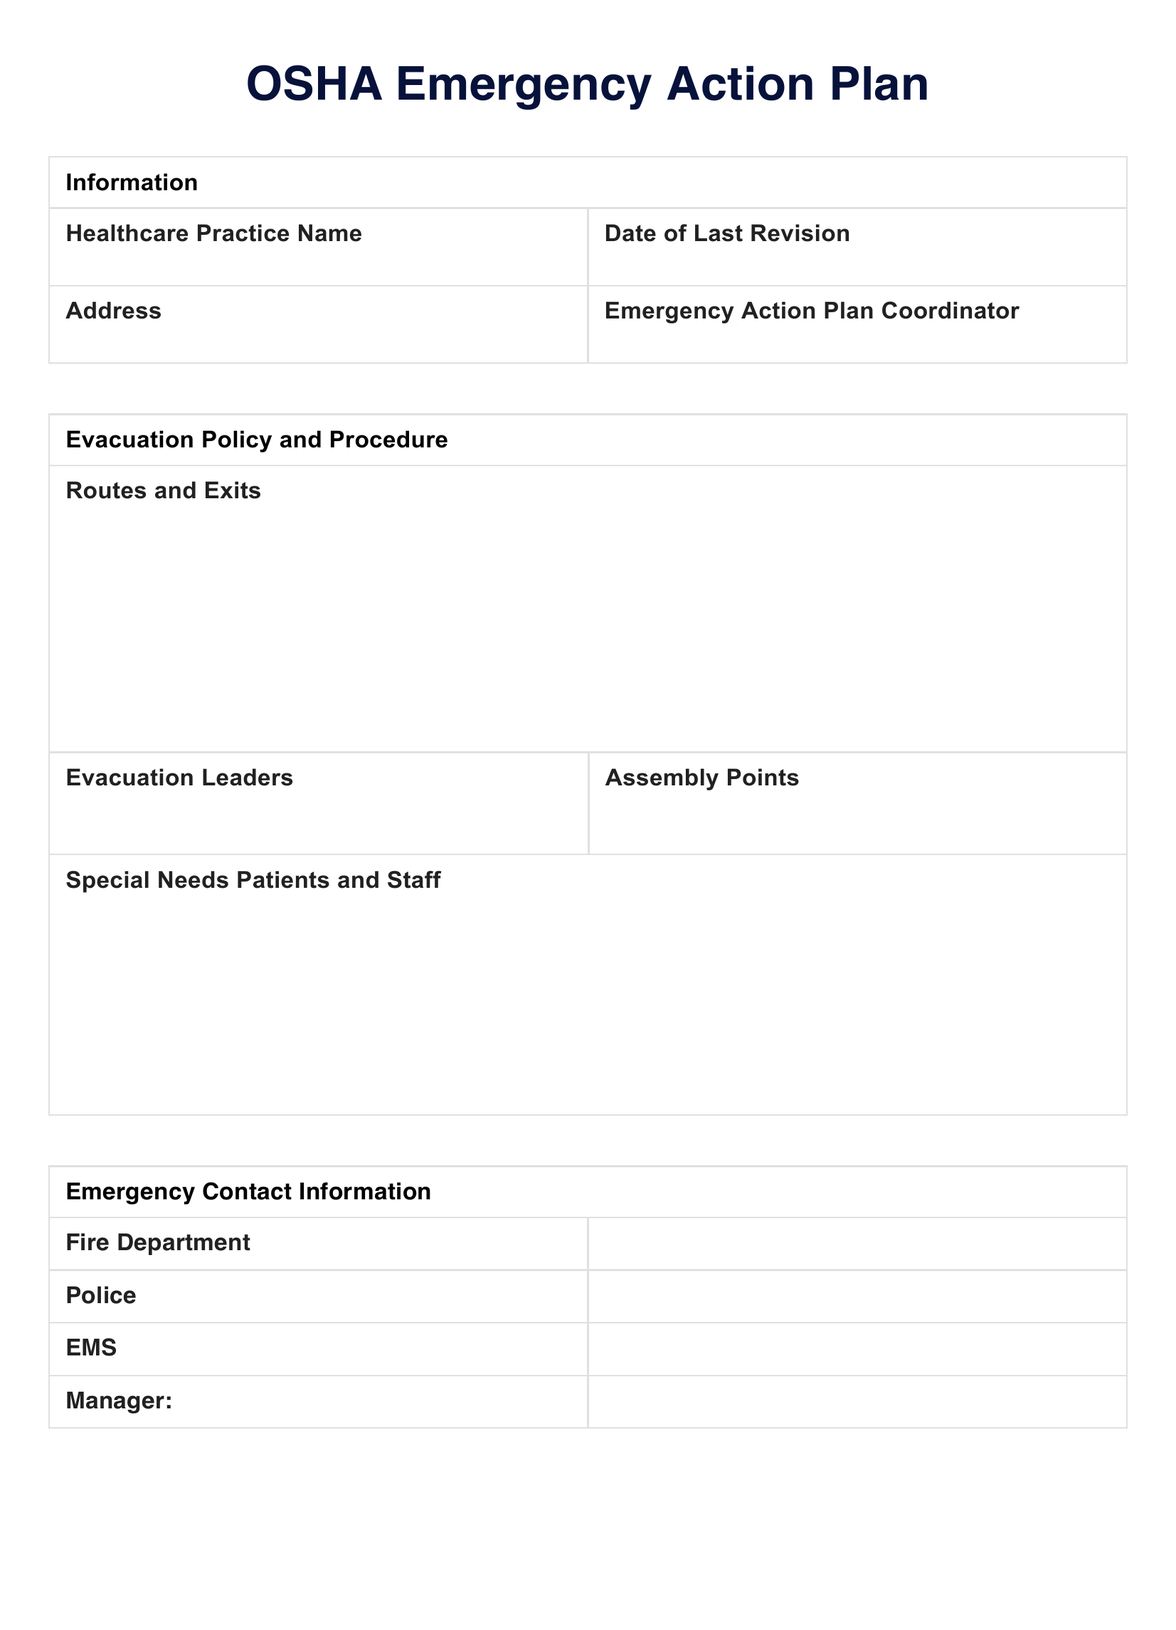 OSHA Emergency Action Plan PDF Example